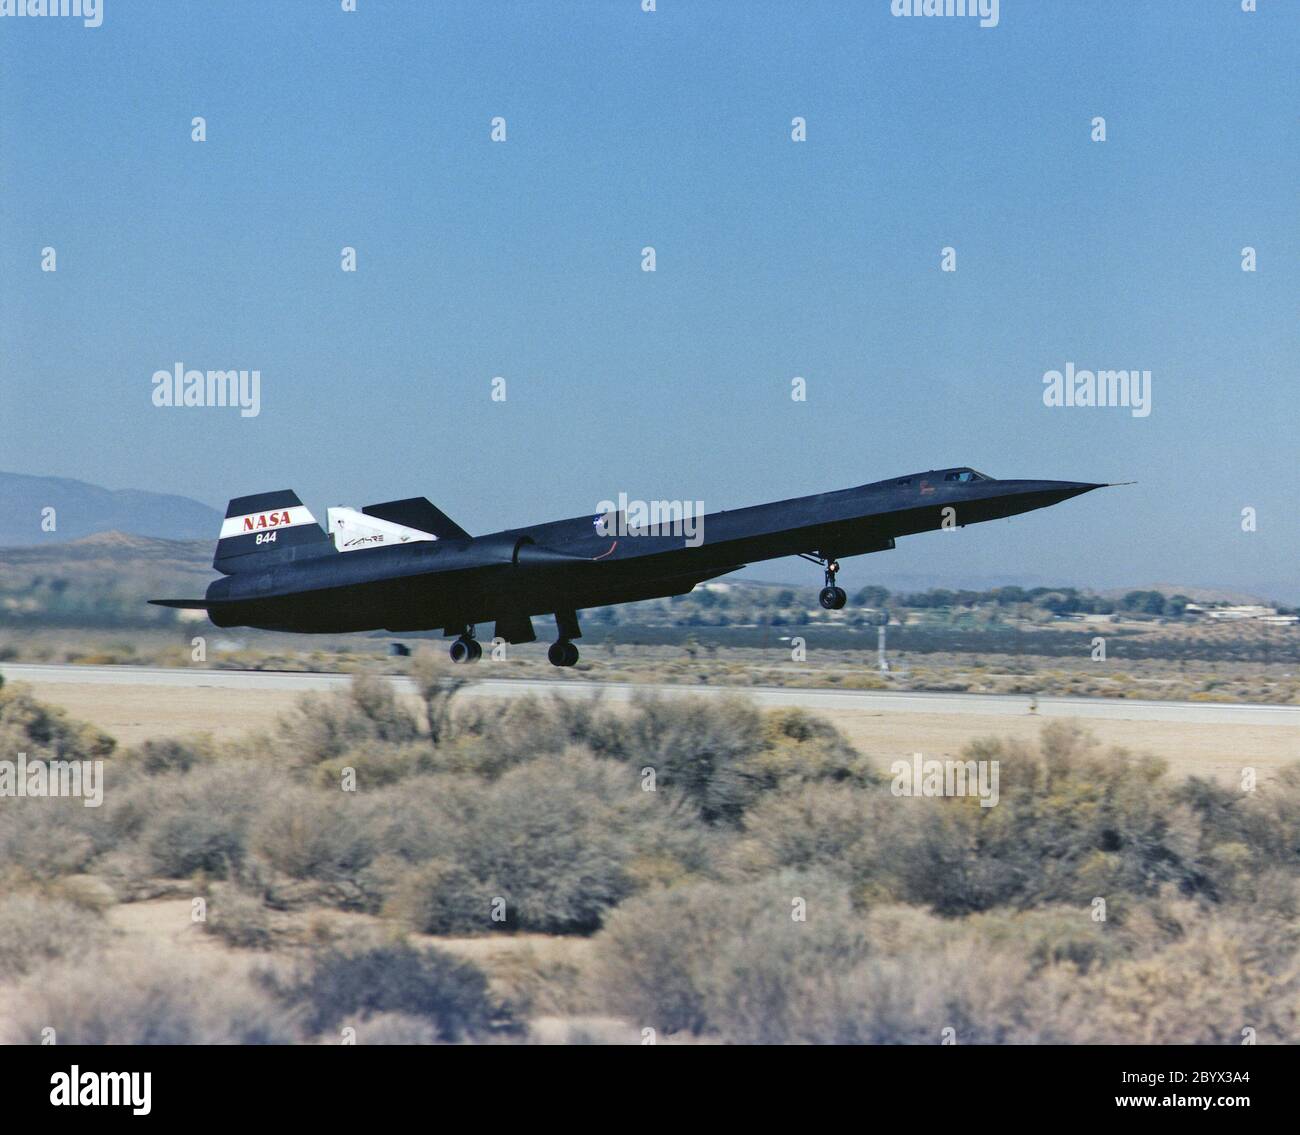 Un SR-71 de la NASA prend son envol le 31 octobre, faisant son premier vol dans le cadre de l'expérience SR-71 (LASRE) NASA/Rocketdyne/Lockheed Martin Linear Aerosbroke au Centre de recherche de vol Dryden de la NASA, Edwards, Californie. La SR-71 a pris son envol à 8 h 31 HNP. L'avion a volé pendant une heure et cinquante minutes, atteignant une vitesse maximale de Mach 1.2 avant d'atterrir à Edwards à 10 h 21 HNP, validant avec succès la configuration de l'expérience SR-71/Linélarised. Le premier vol avait pour but d'évaluer les caractéristiques aérodynamiques et la manipulation du SR-71/Linear aerosbrochet Experiment Banque D'Images